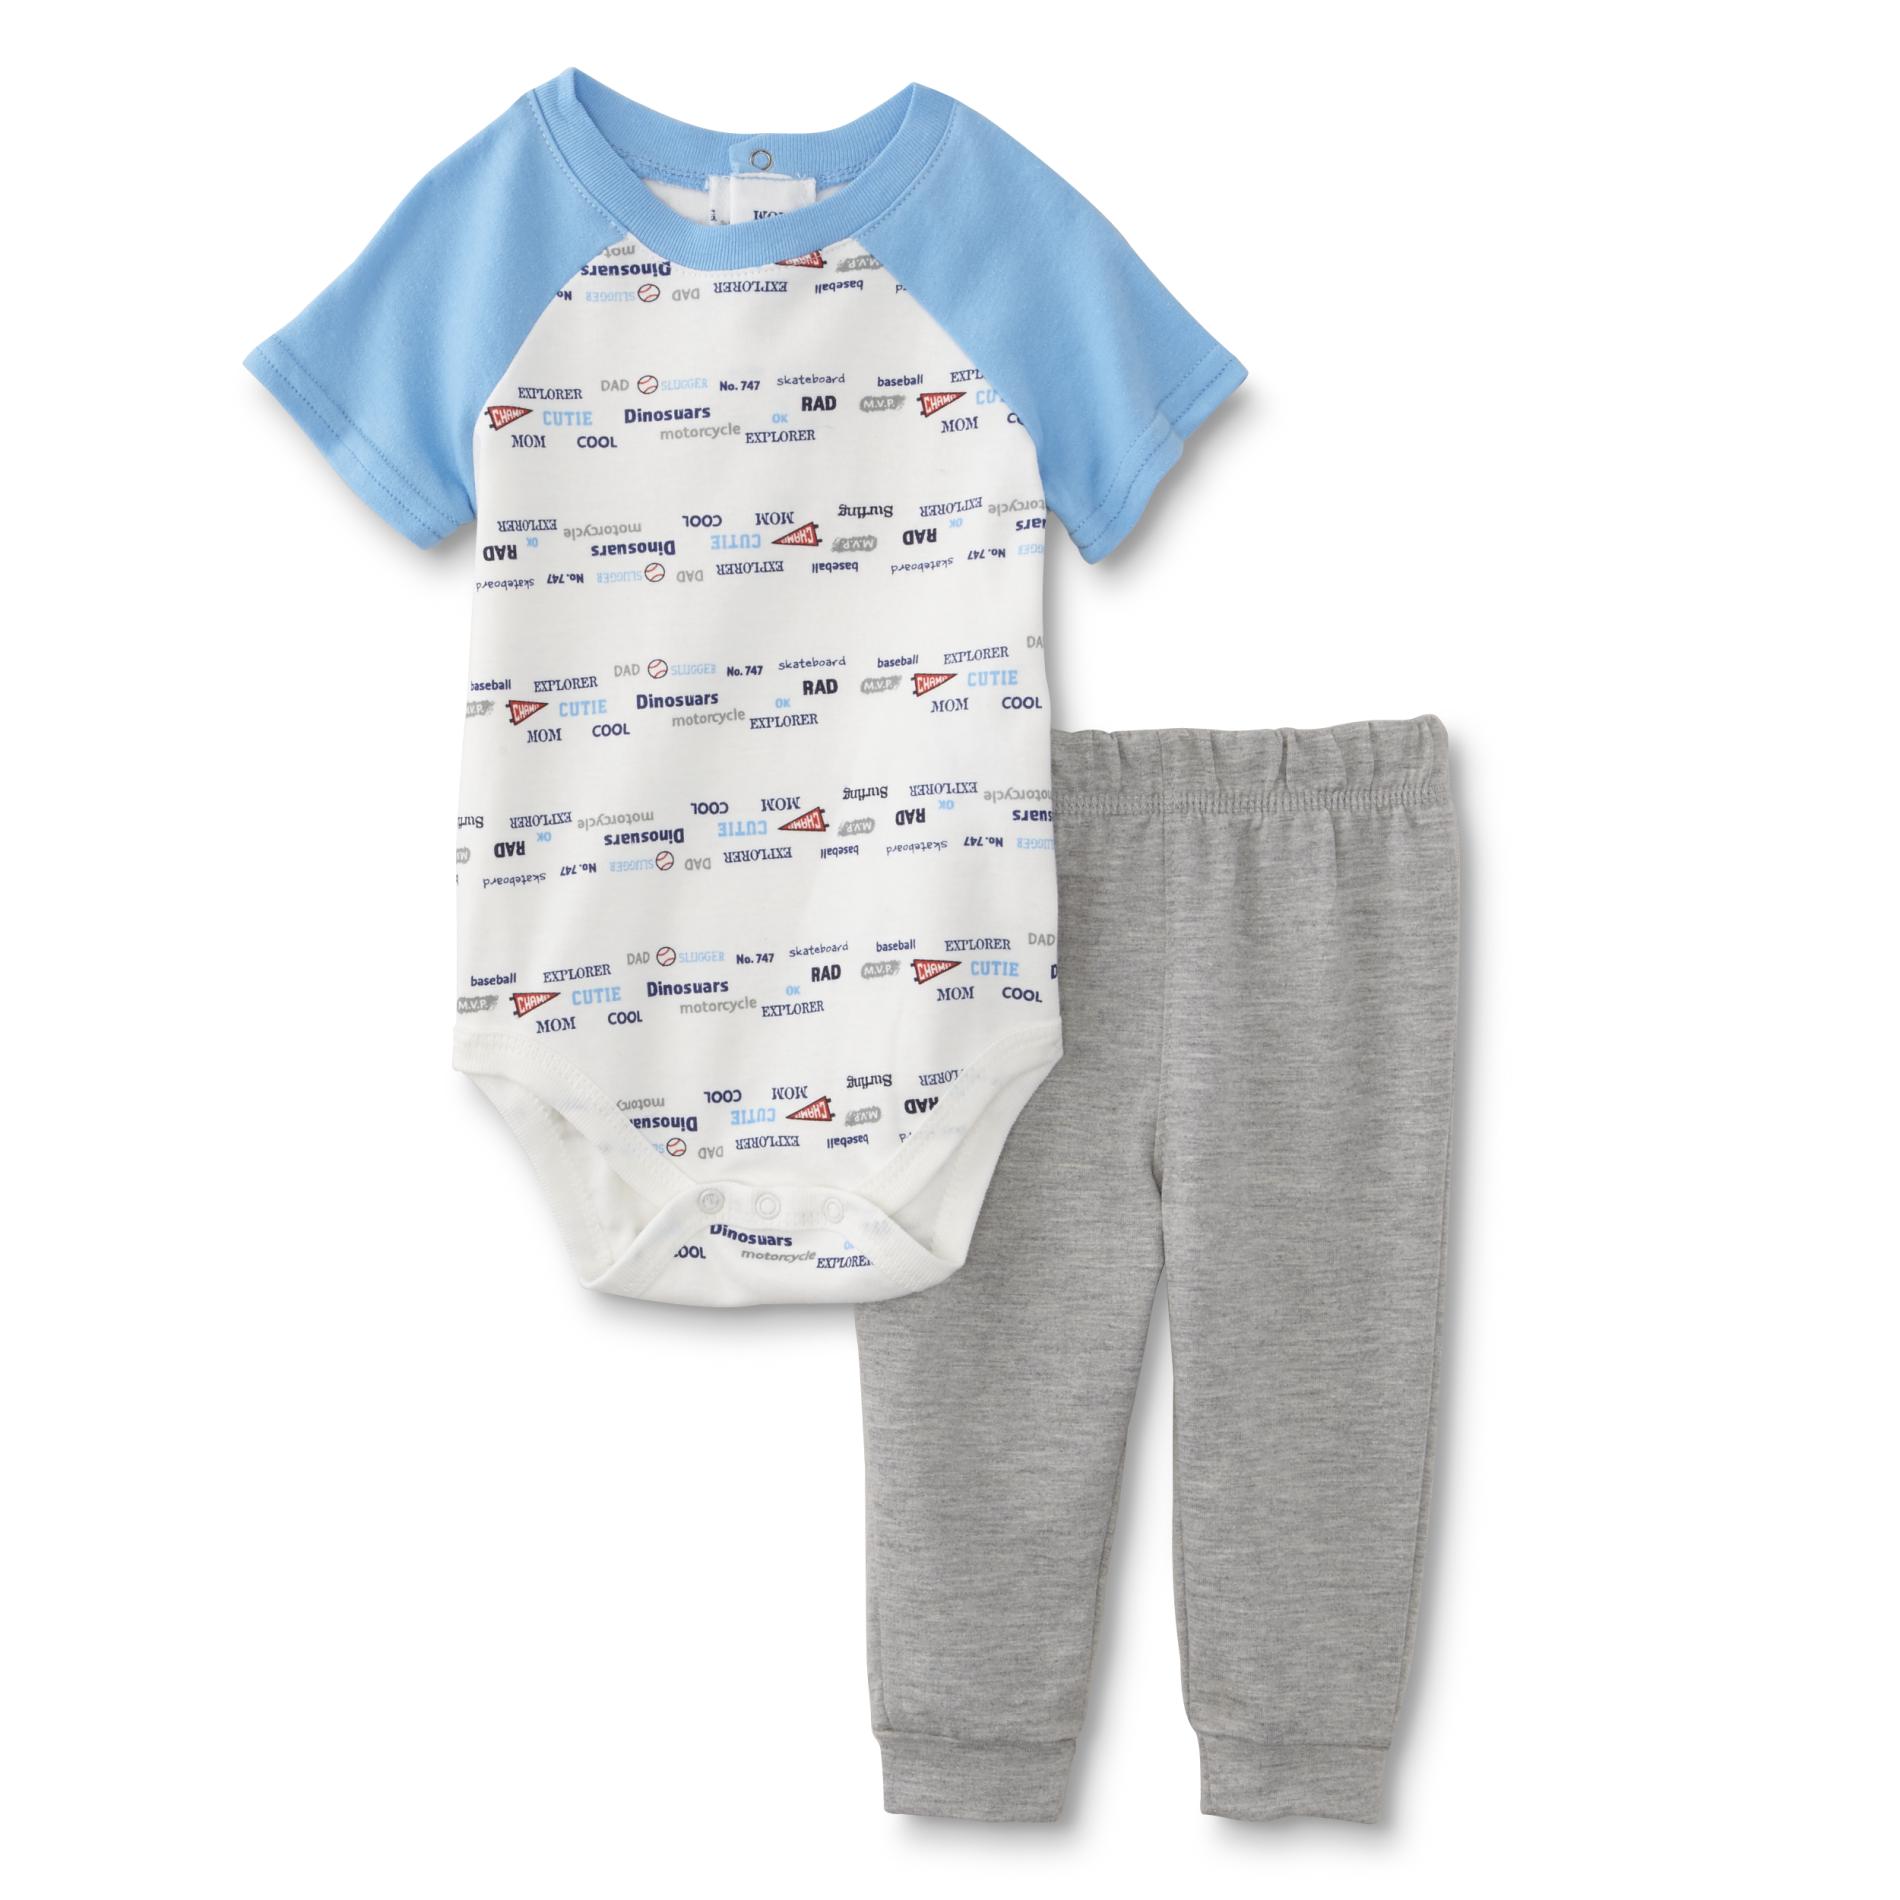 Little Wonders Infant Boys' Bodysuit & Pants - Mixed Print